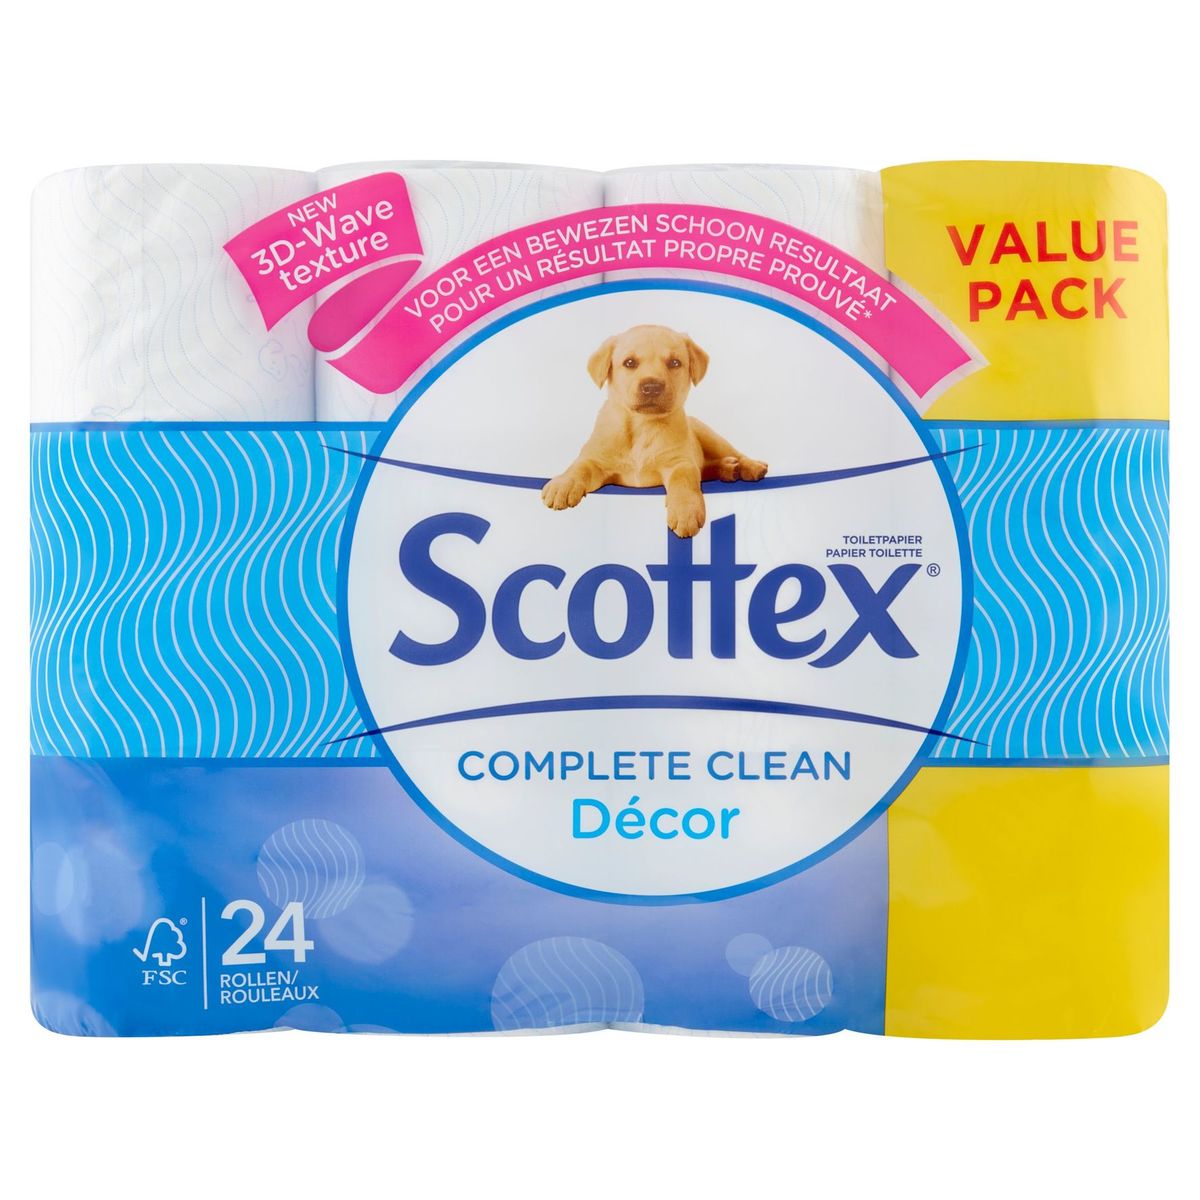 Scottex Complete Clean Décor Papier Toilette Value Pack 24 Rouleaux